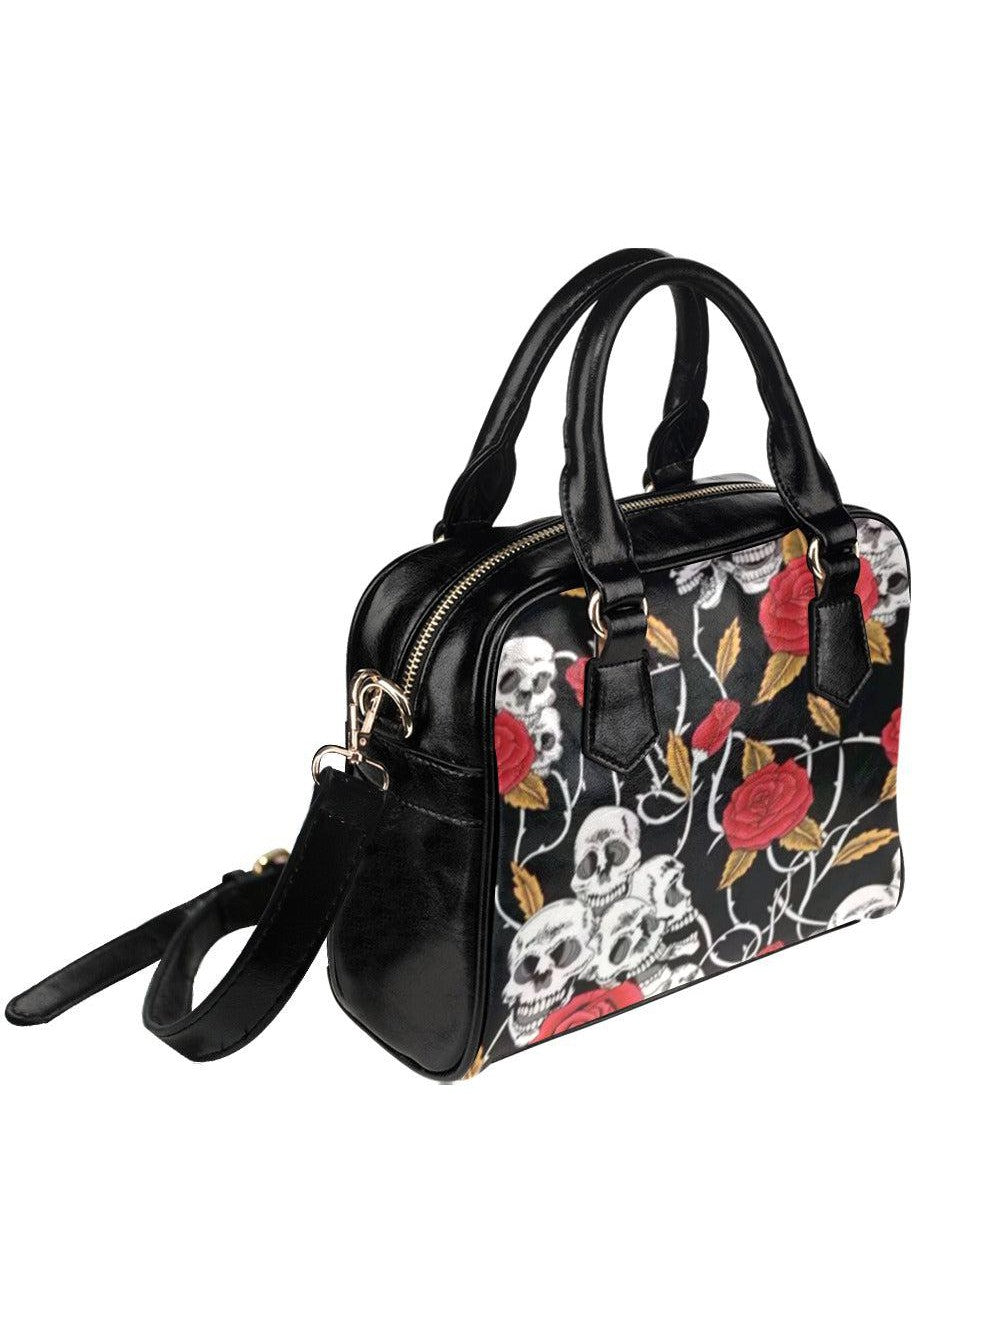 SKULLS & ROSES Shoulder Handbag